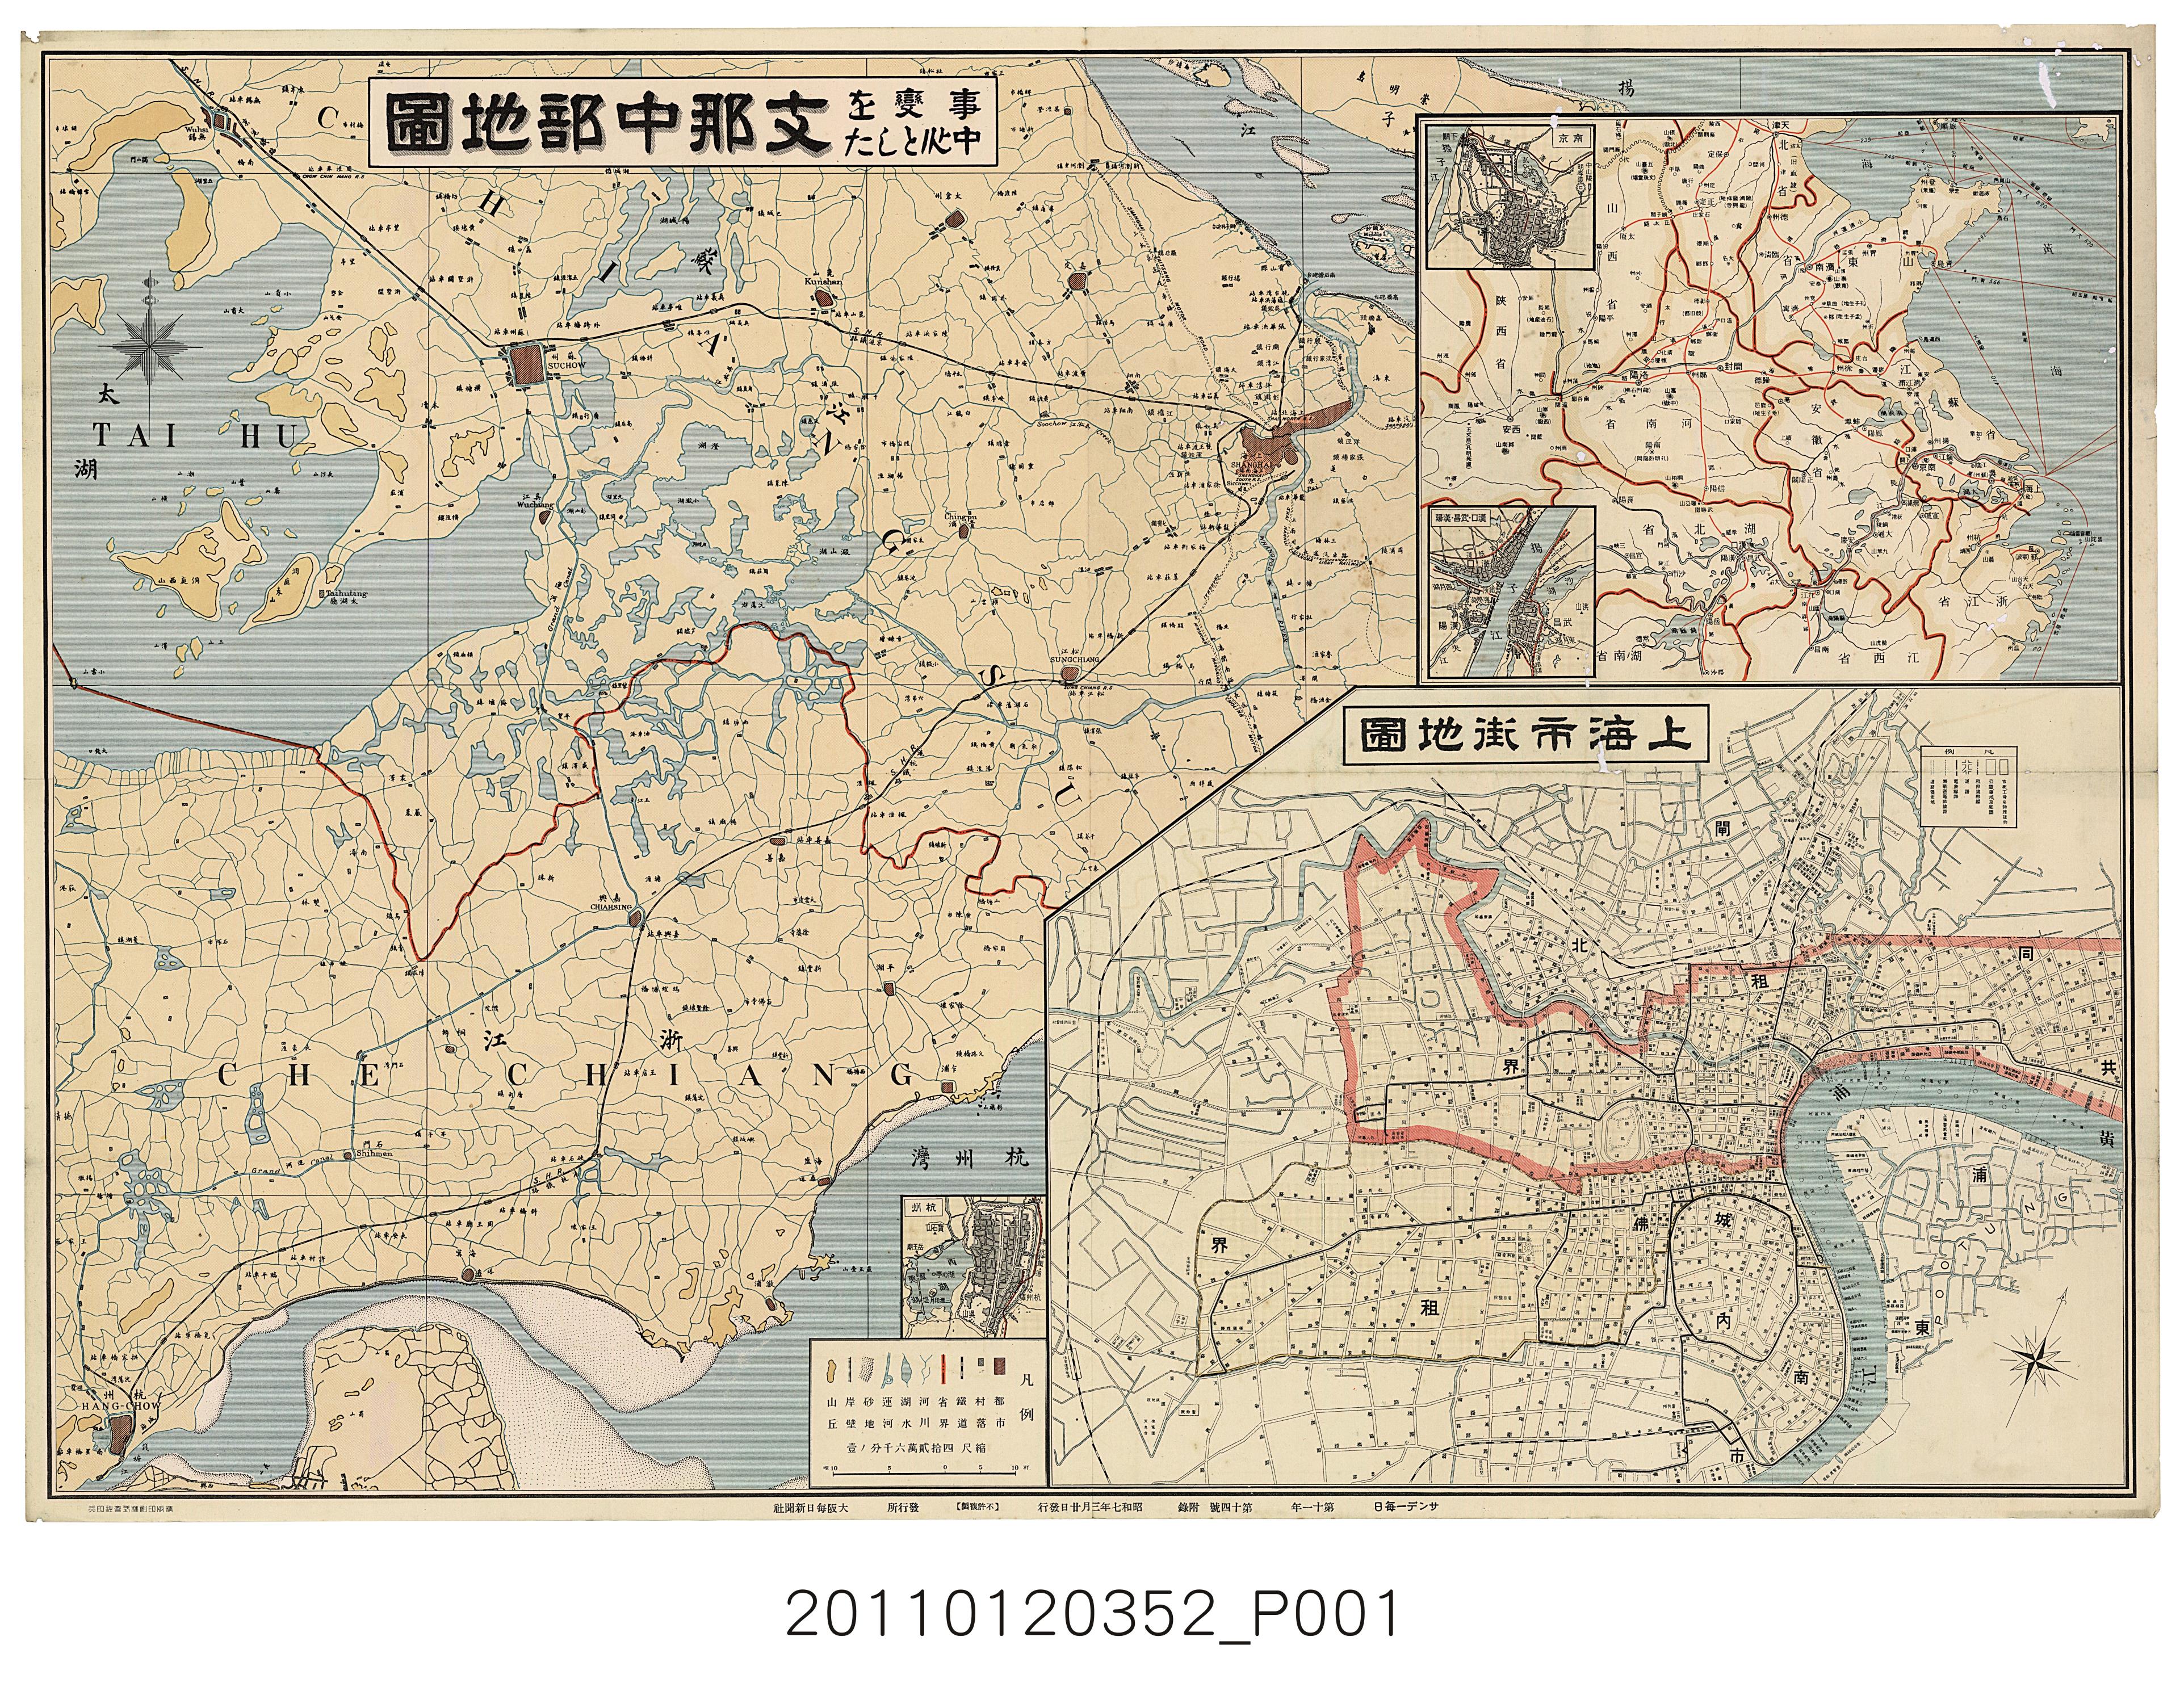 大阪每日新聞社〈支那中部地圖〉 (共1張)